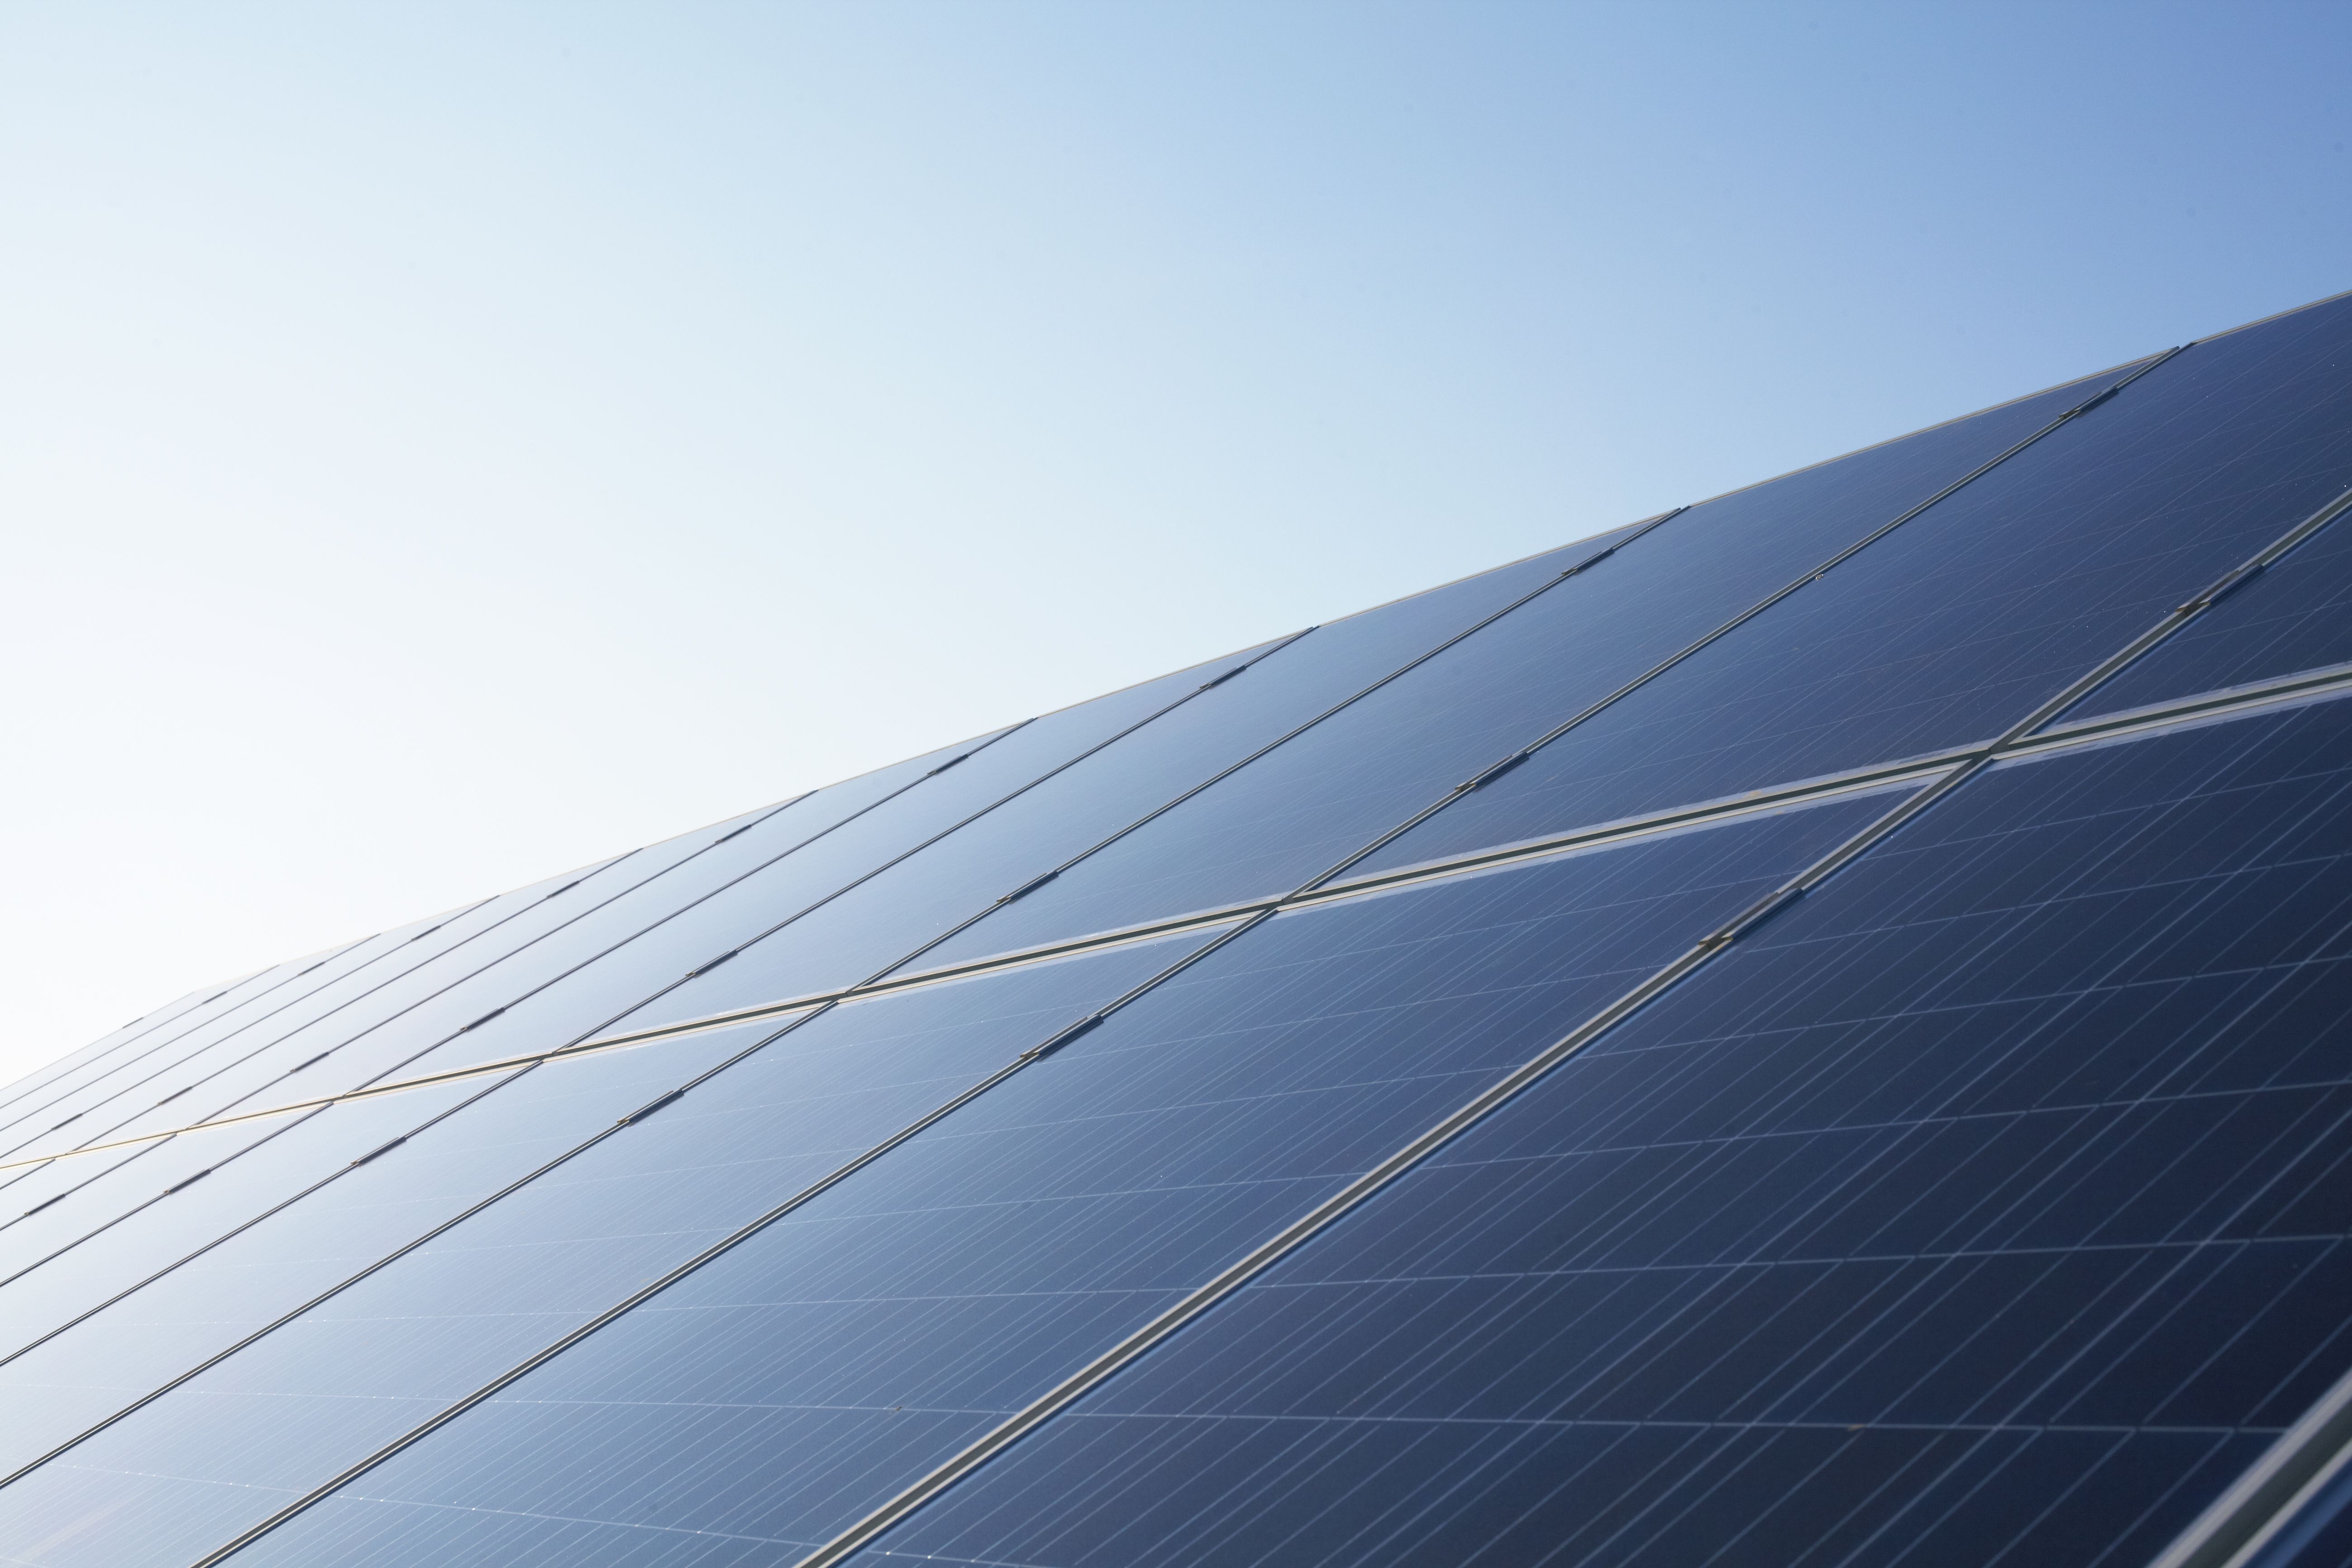 Cepsa obtiene la autorización ambiental para desarrollar 257 MW de energía solar en Anda lucia